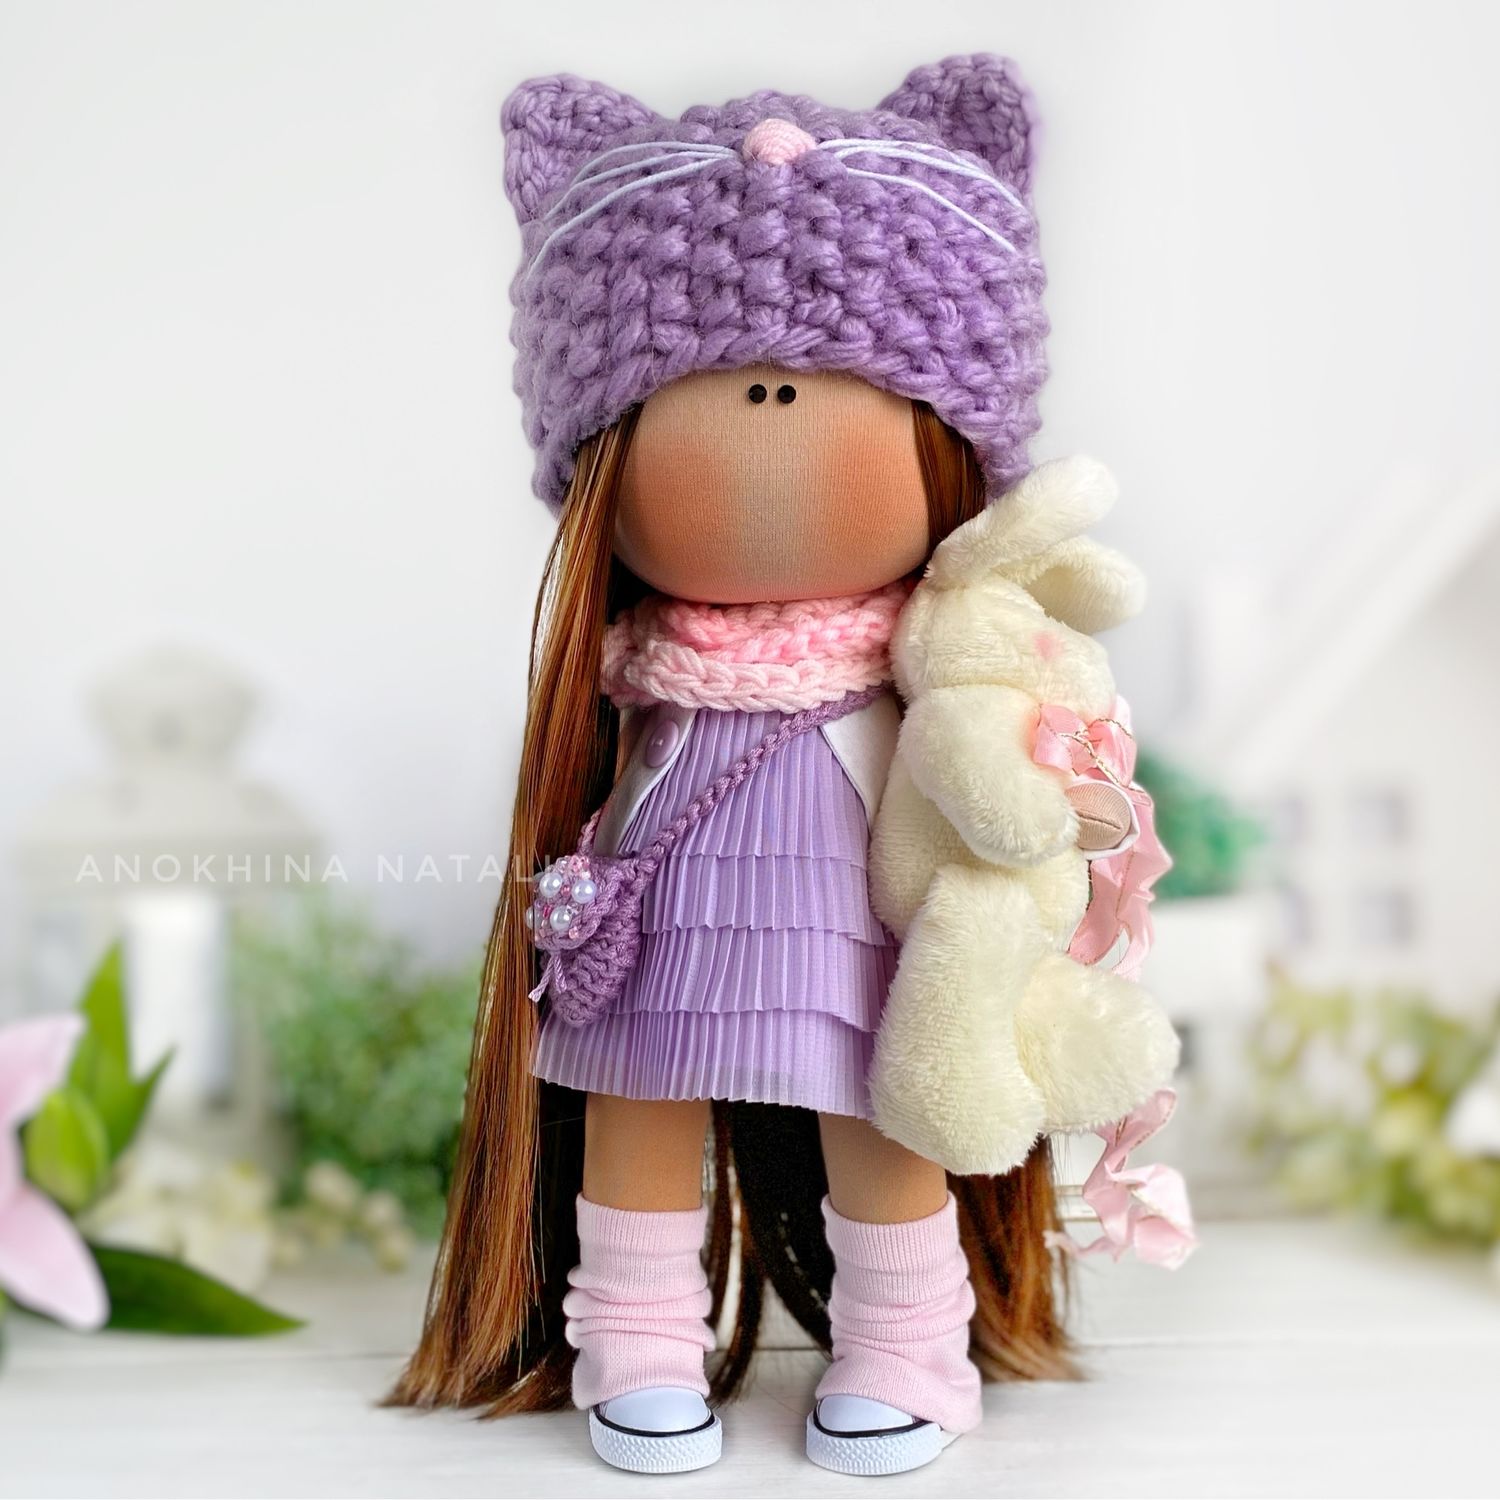 Купить куклу тильду в интернет-магазине авторских игрушек | Изделия ручной работы на webmaster-korolev.ru